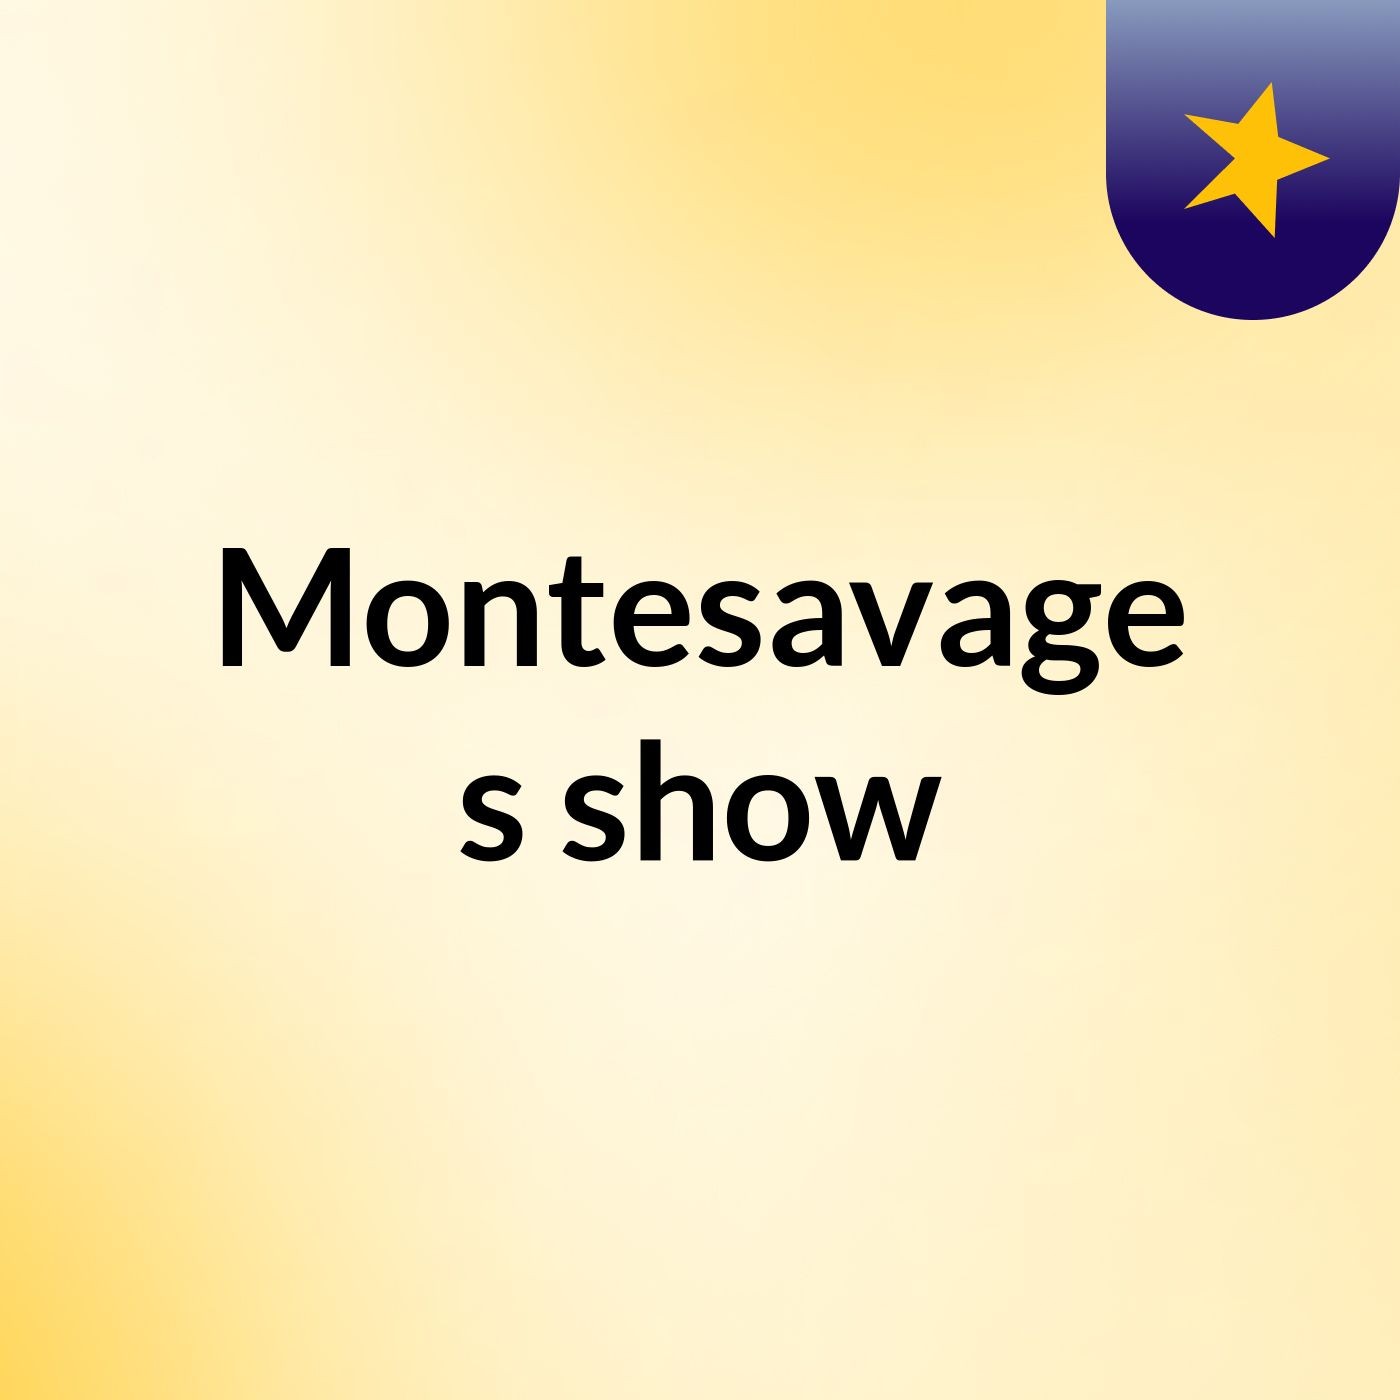 Montesavage's show